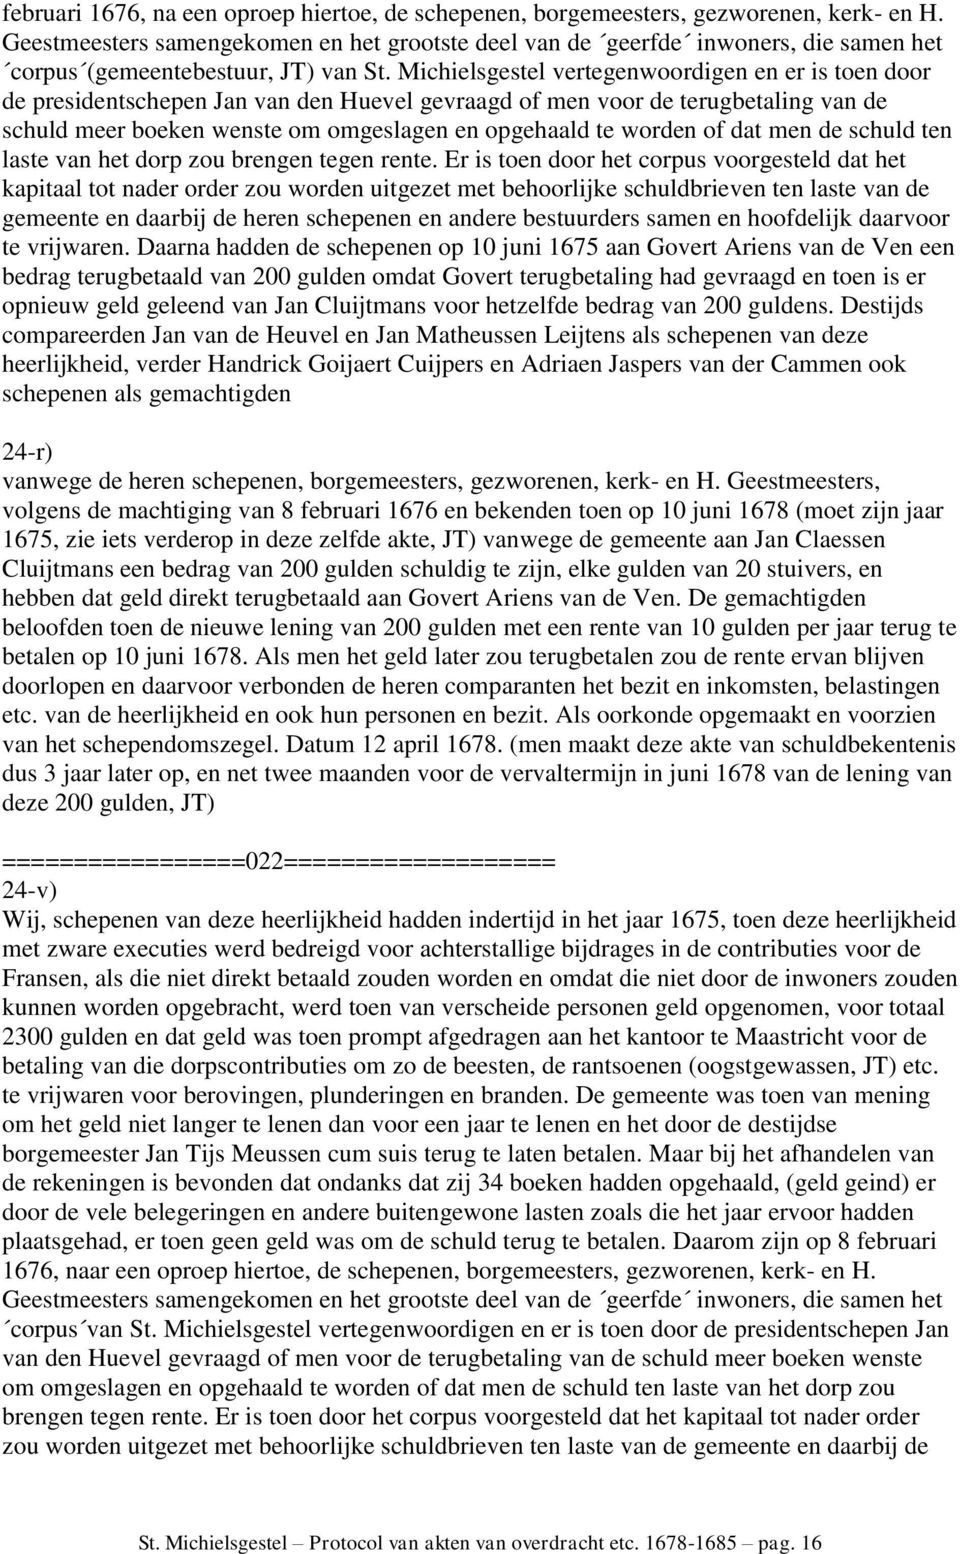 Michielsgestel vertegenwoordigen en er is toen door de presidentschepen Jan van den Huevel gevraagd of men voor de terugbetaling van de schuld meer boeken wenste om omgeslagen en opgehaald te worden